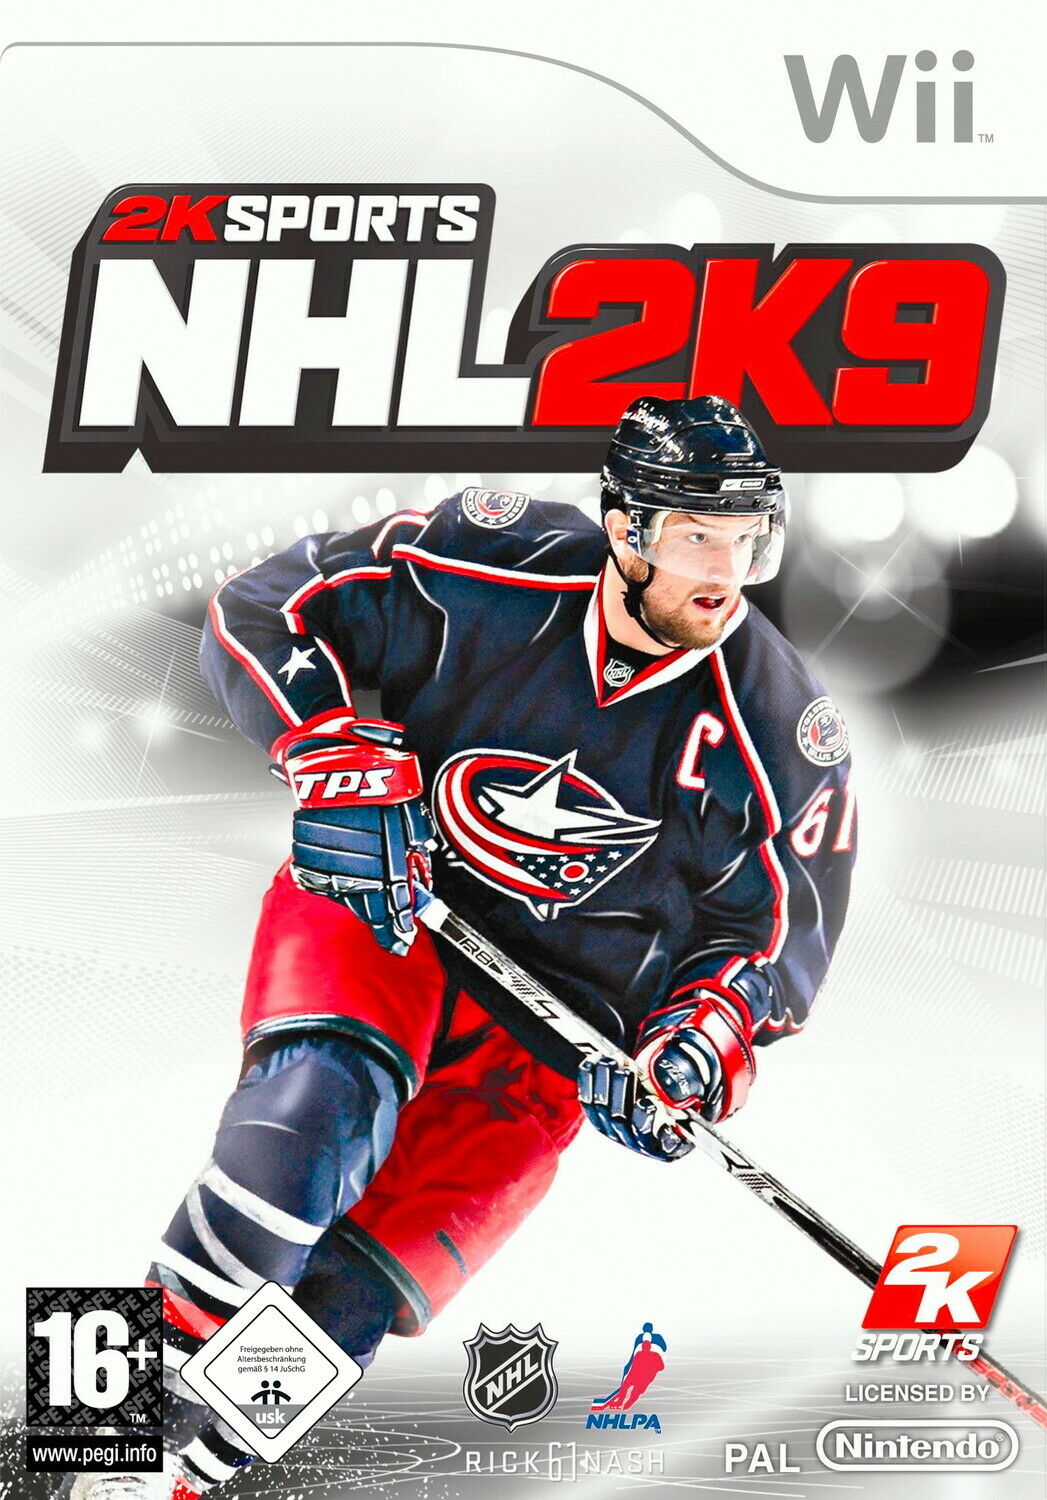 NHL 2K9